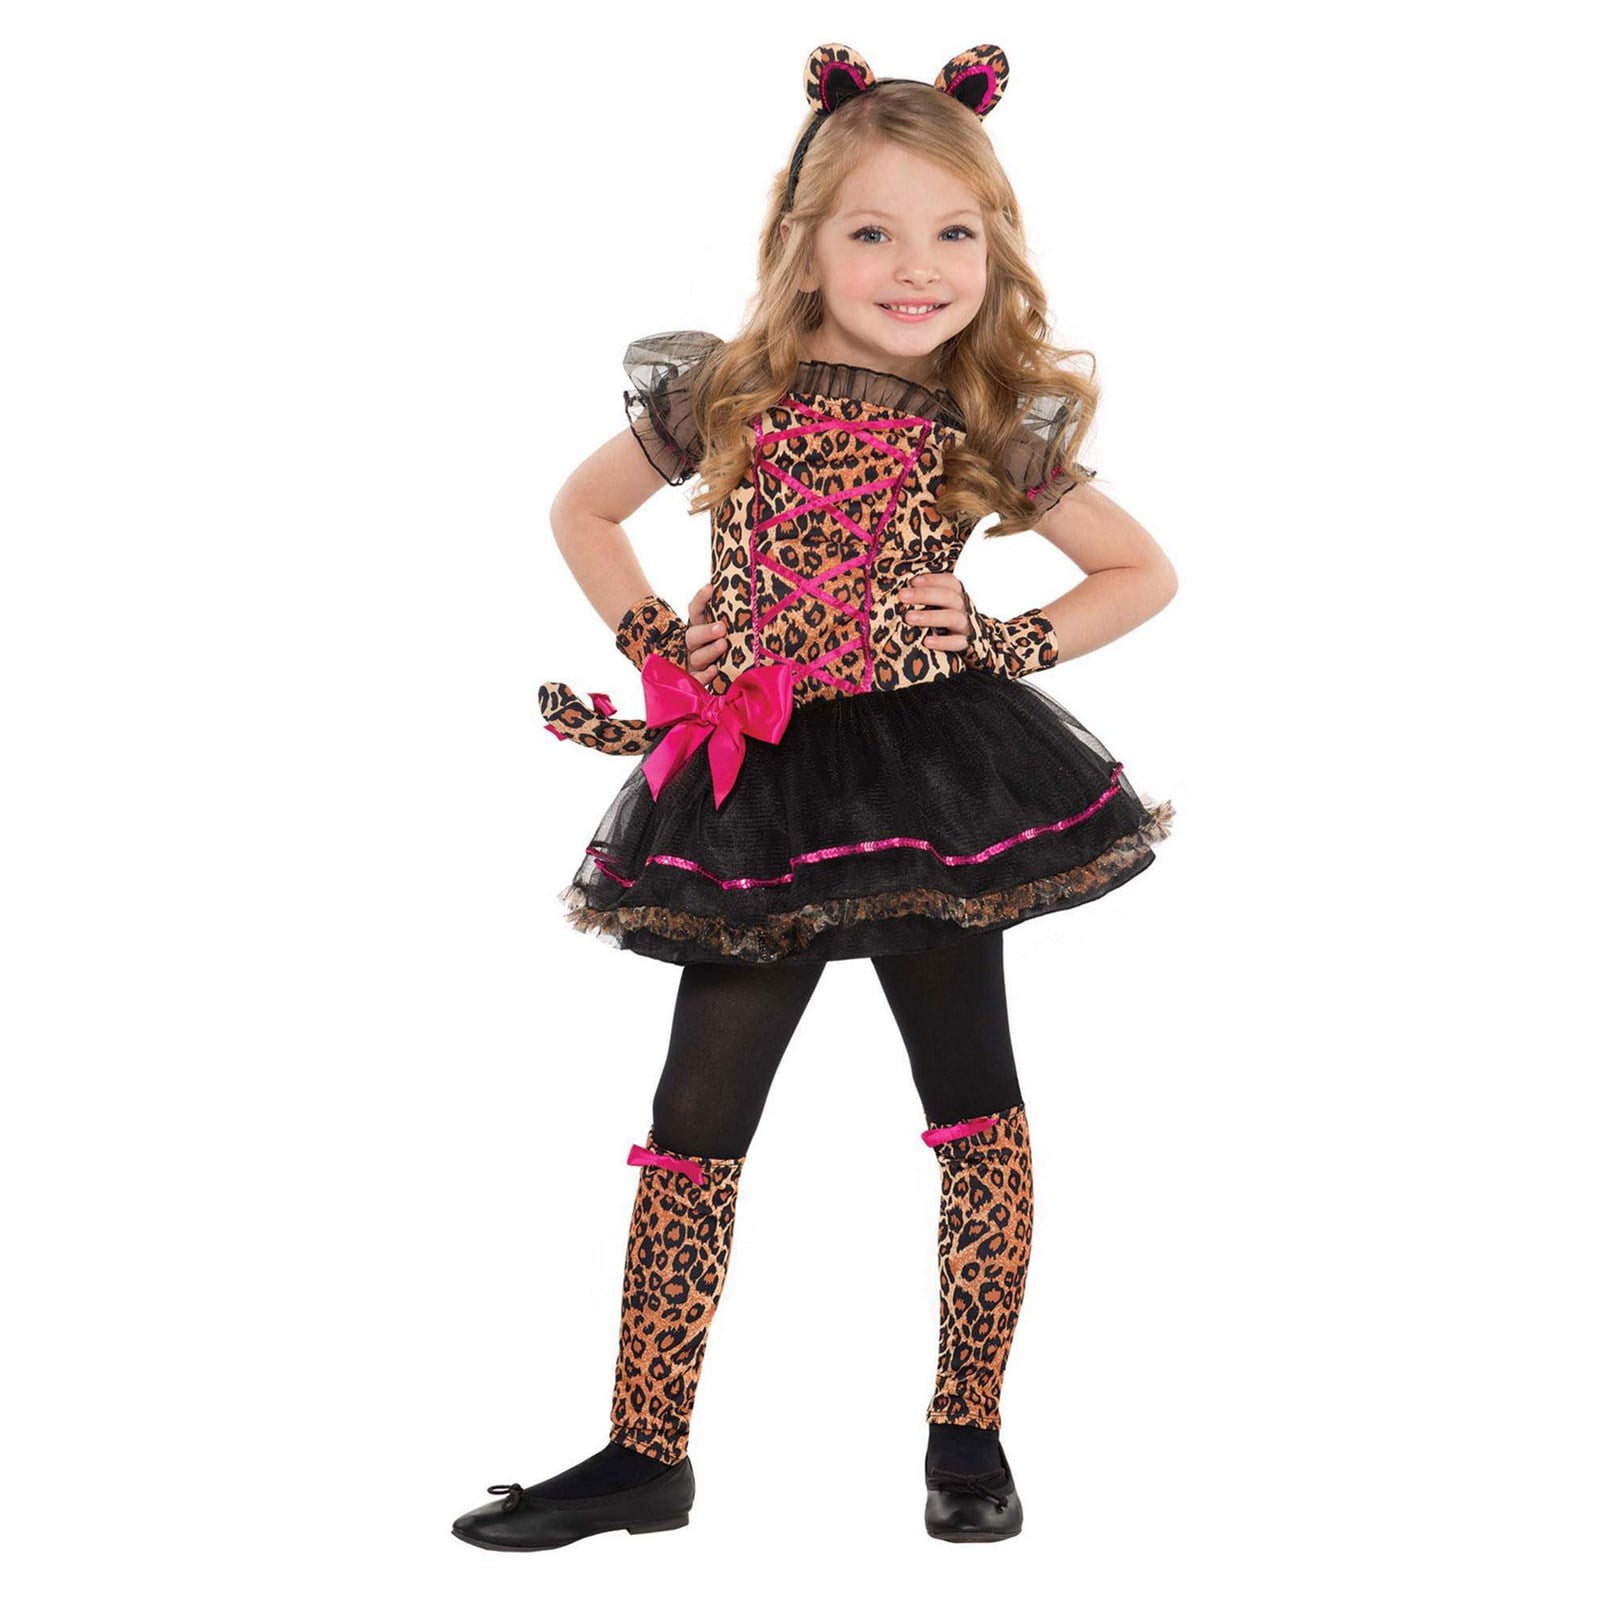 Precious Leopard Toddler Costume - Walmart.com - Walmart.com